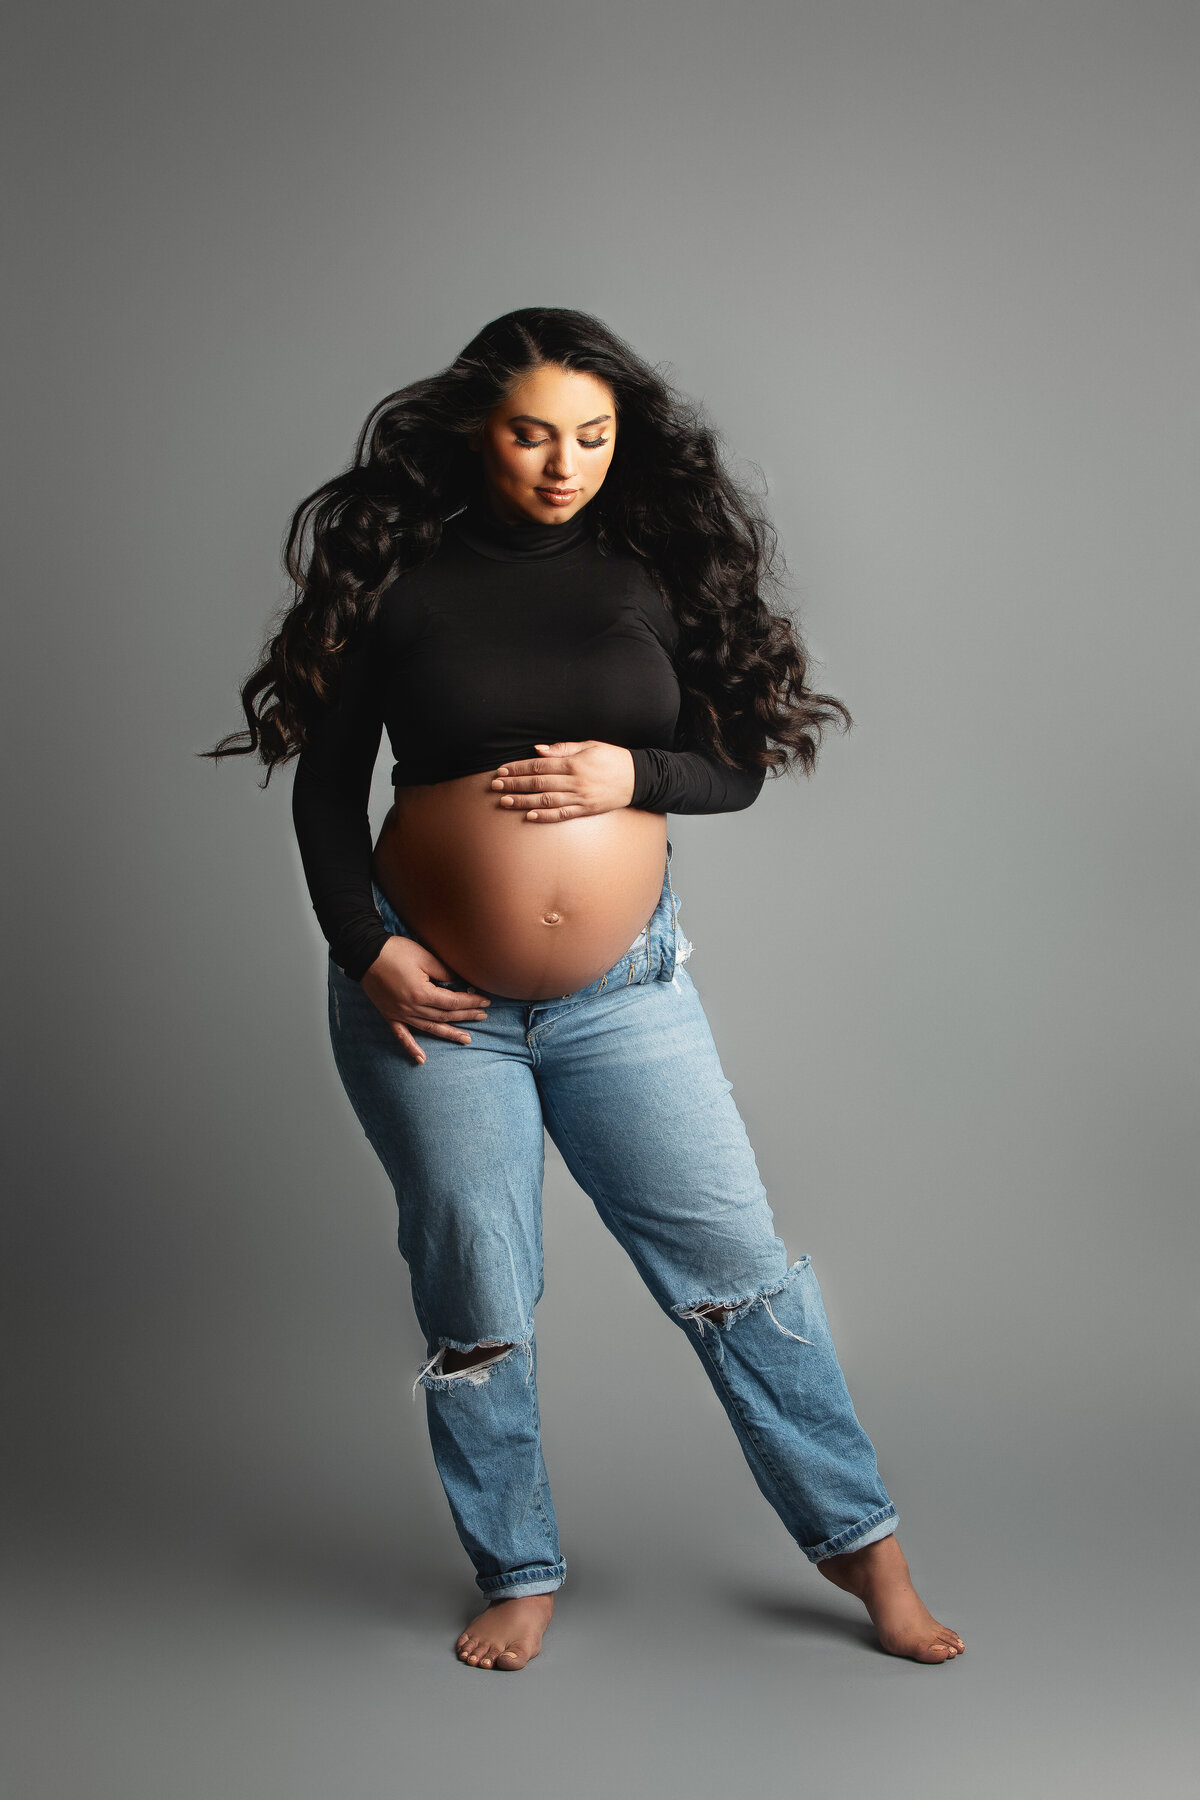 Pregnancy photos Waco